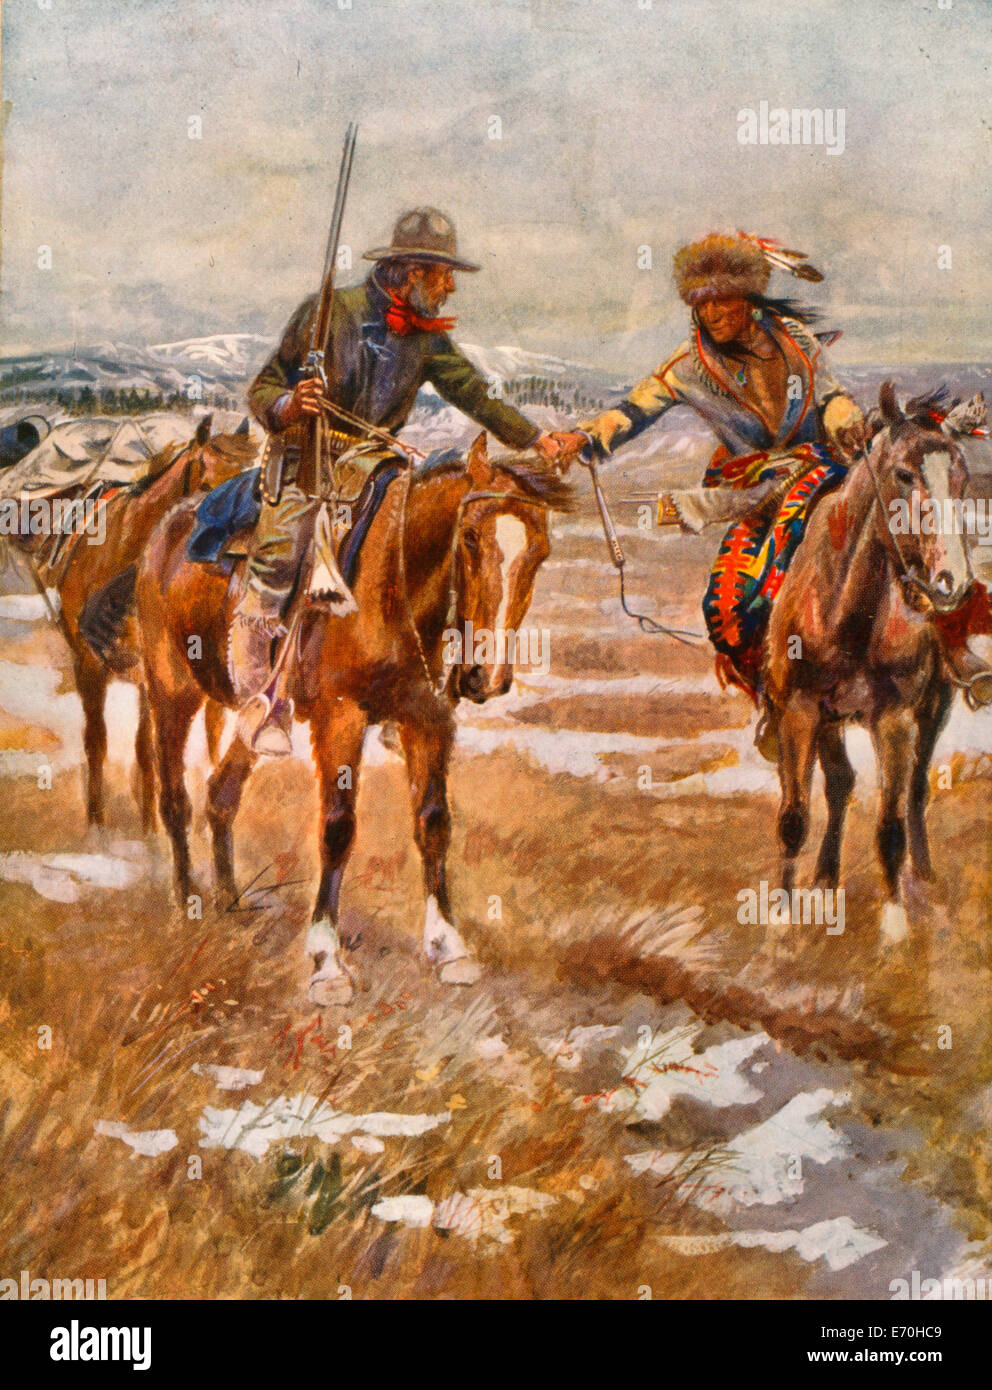 La réunion - homme euro-américaine, holding rifle, à cheval, serrant la main de Natif américain à cheval, vers 1910 Banque D'Images